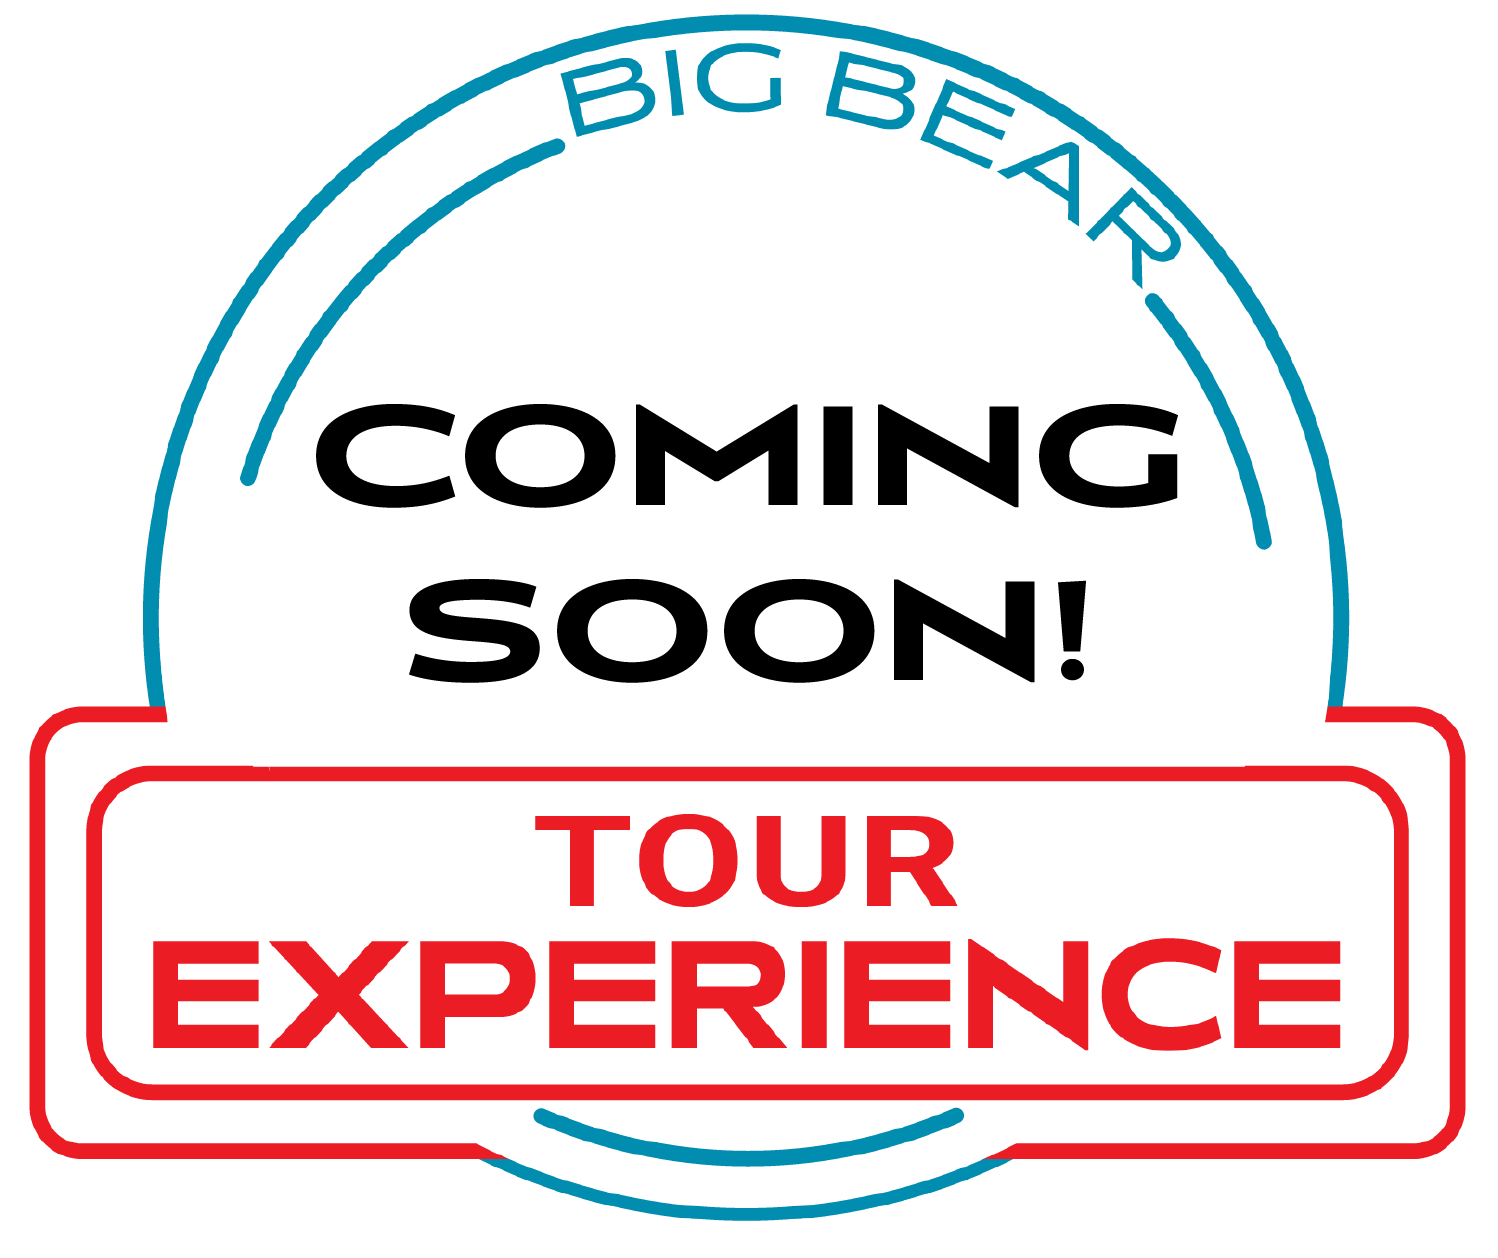 Tour Experience temporary logo image